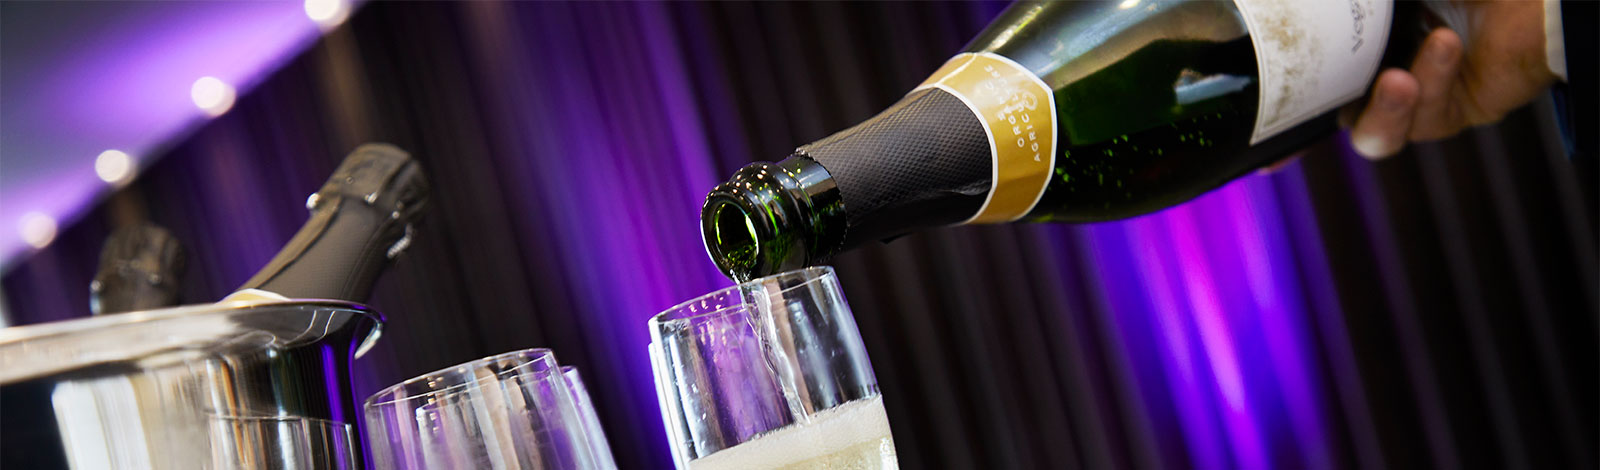 Champagne og smuk belysning skaber fest og glæde ved din fest